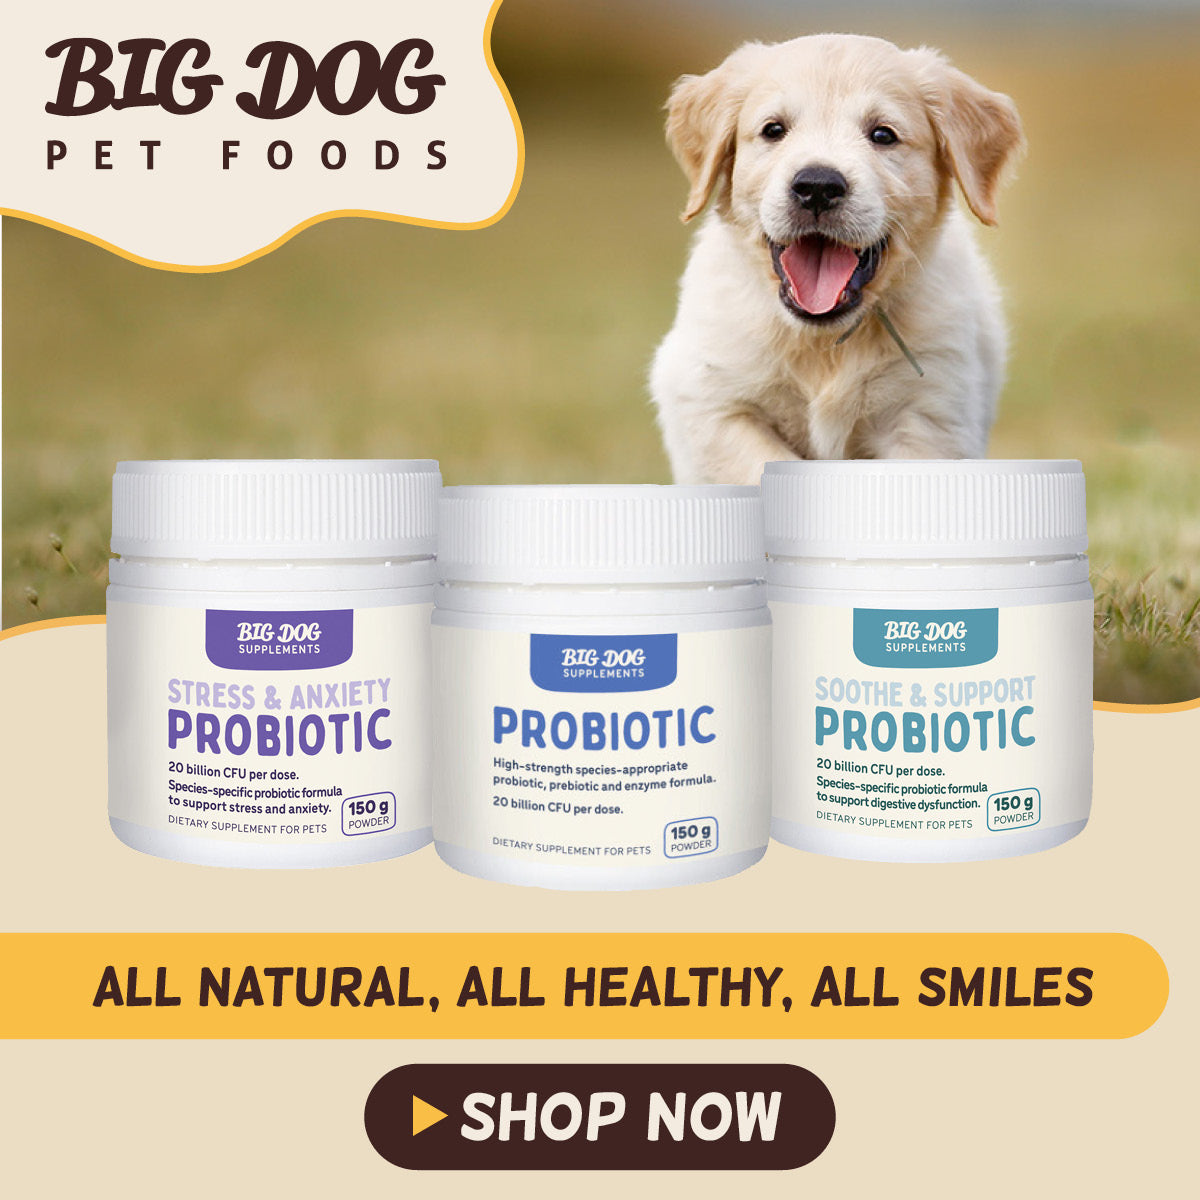 Big Dog Treats and Supplements